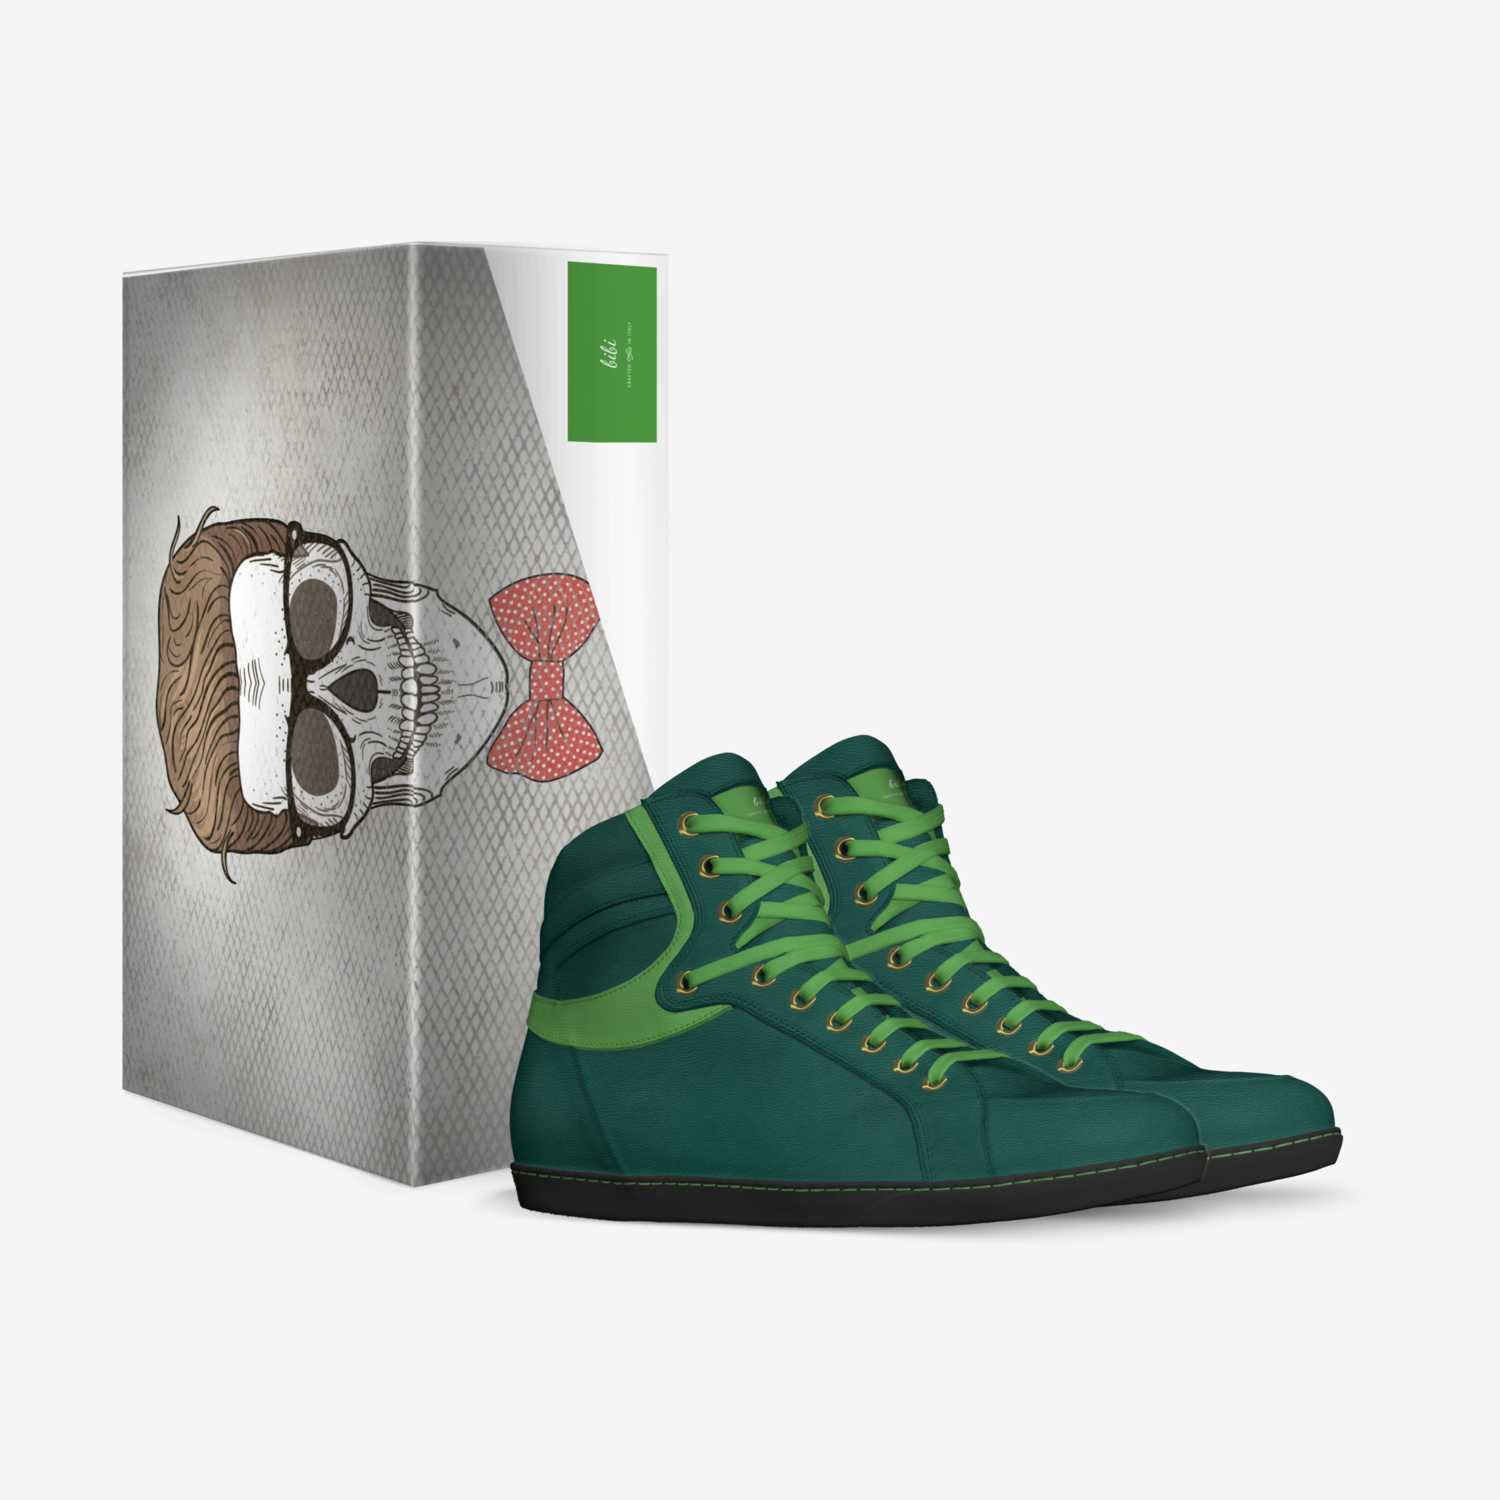 bibi custom made in Italy shoes by Robel Yemane | Box view